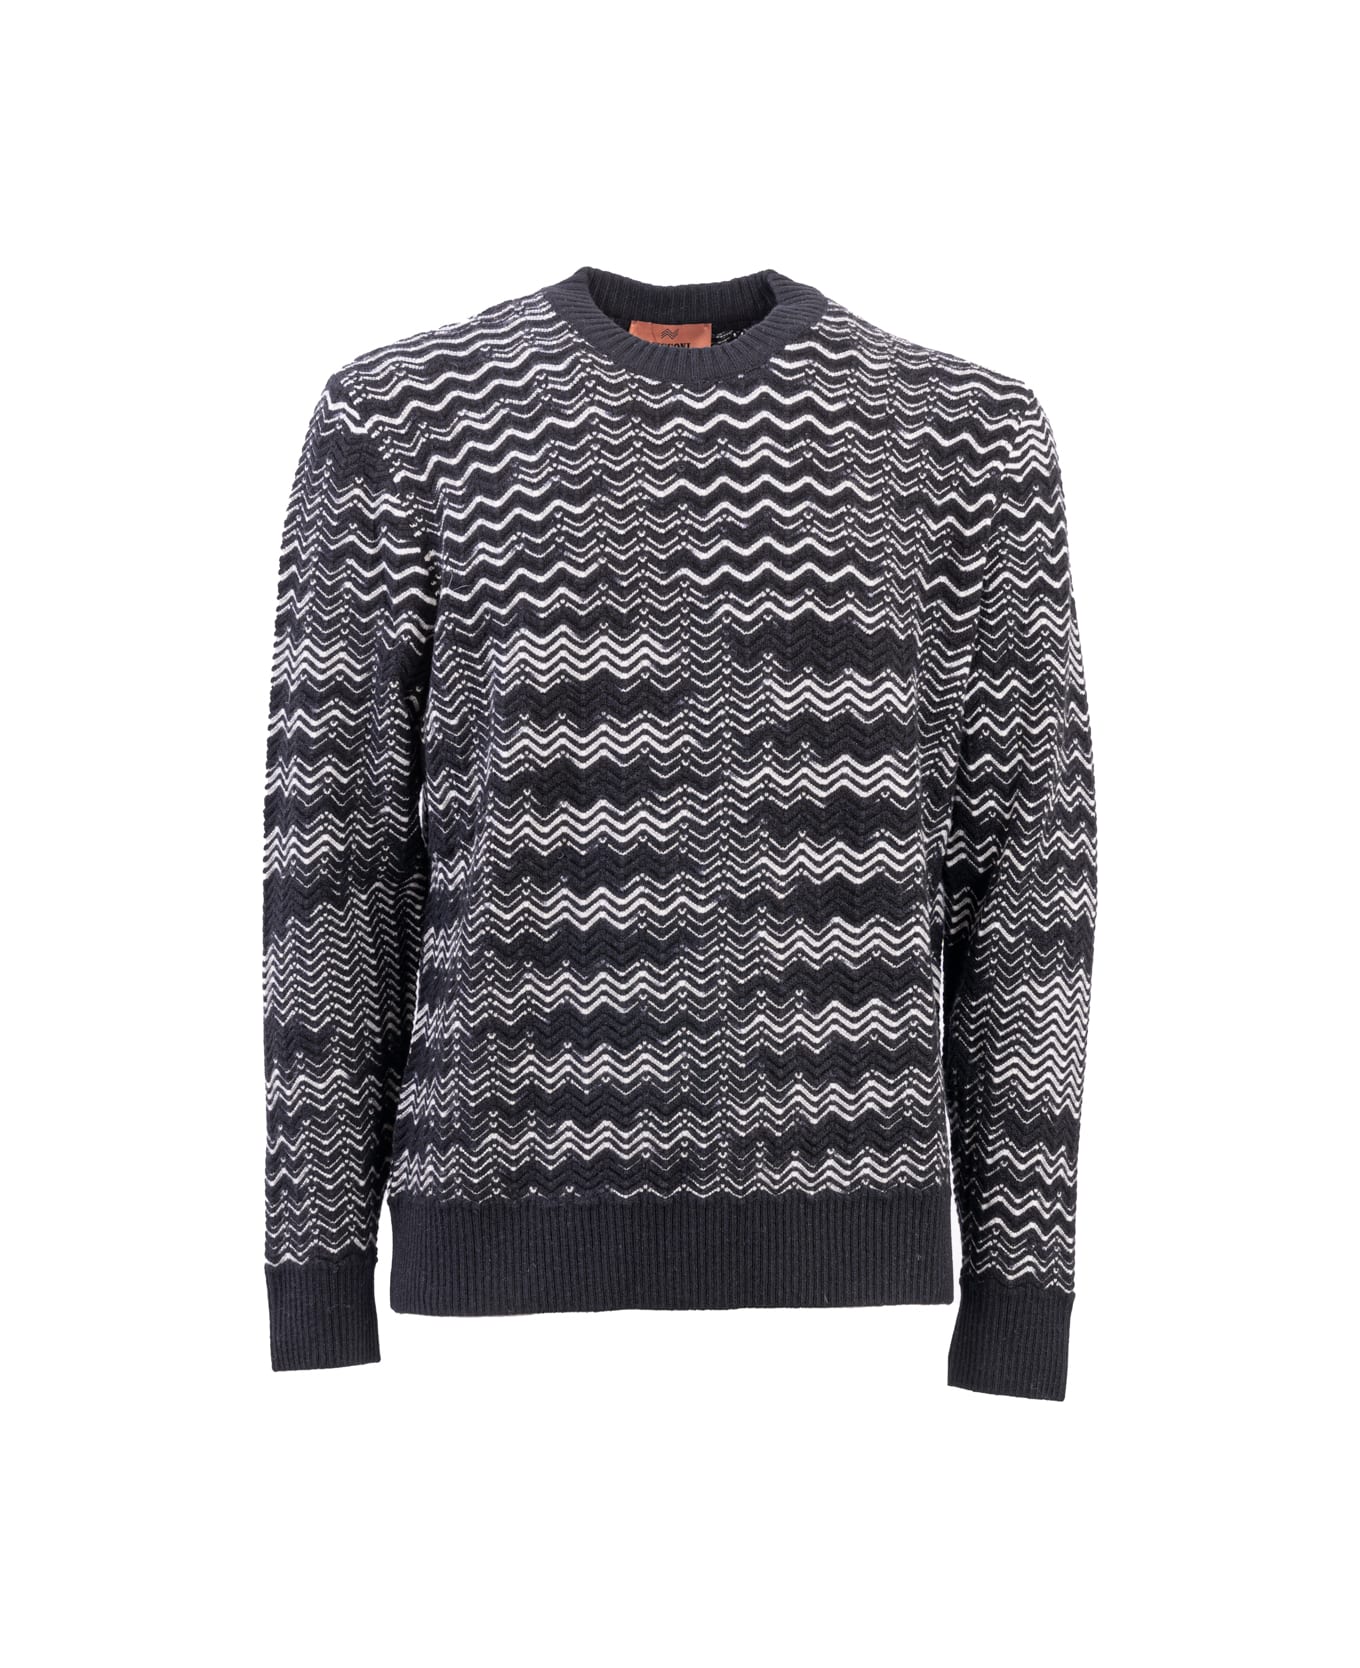 Missoni Knitted Pullover - Nero e Bianco ニットウェア